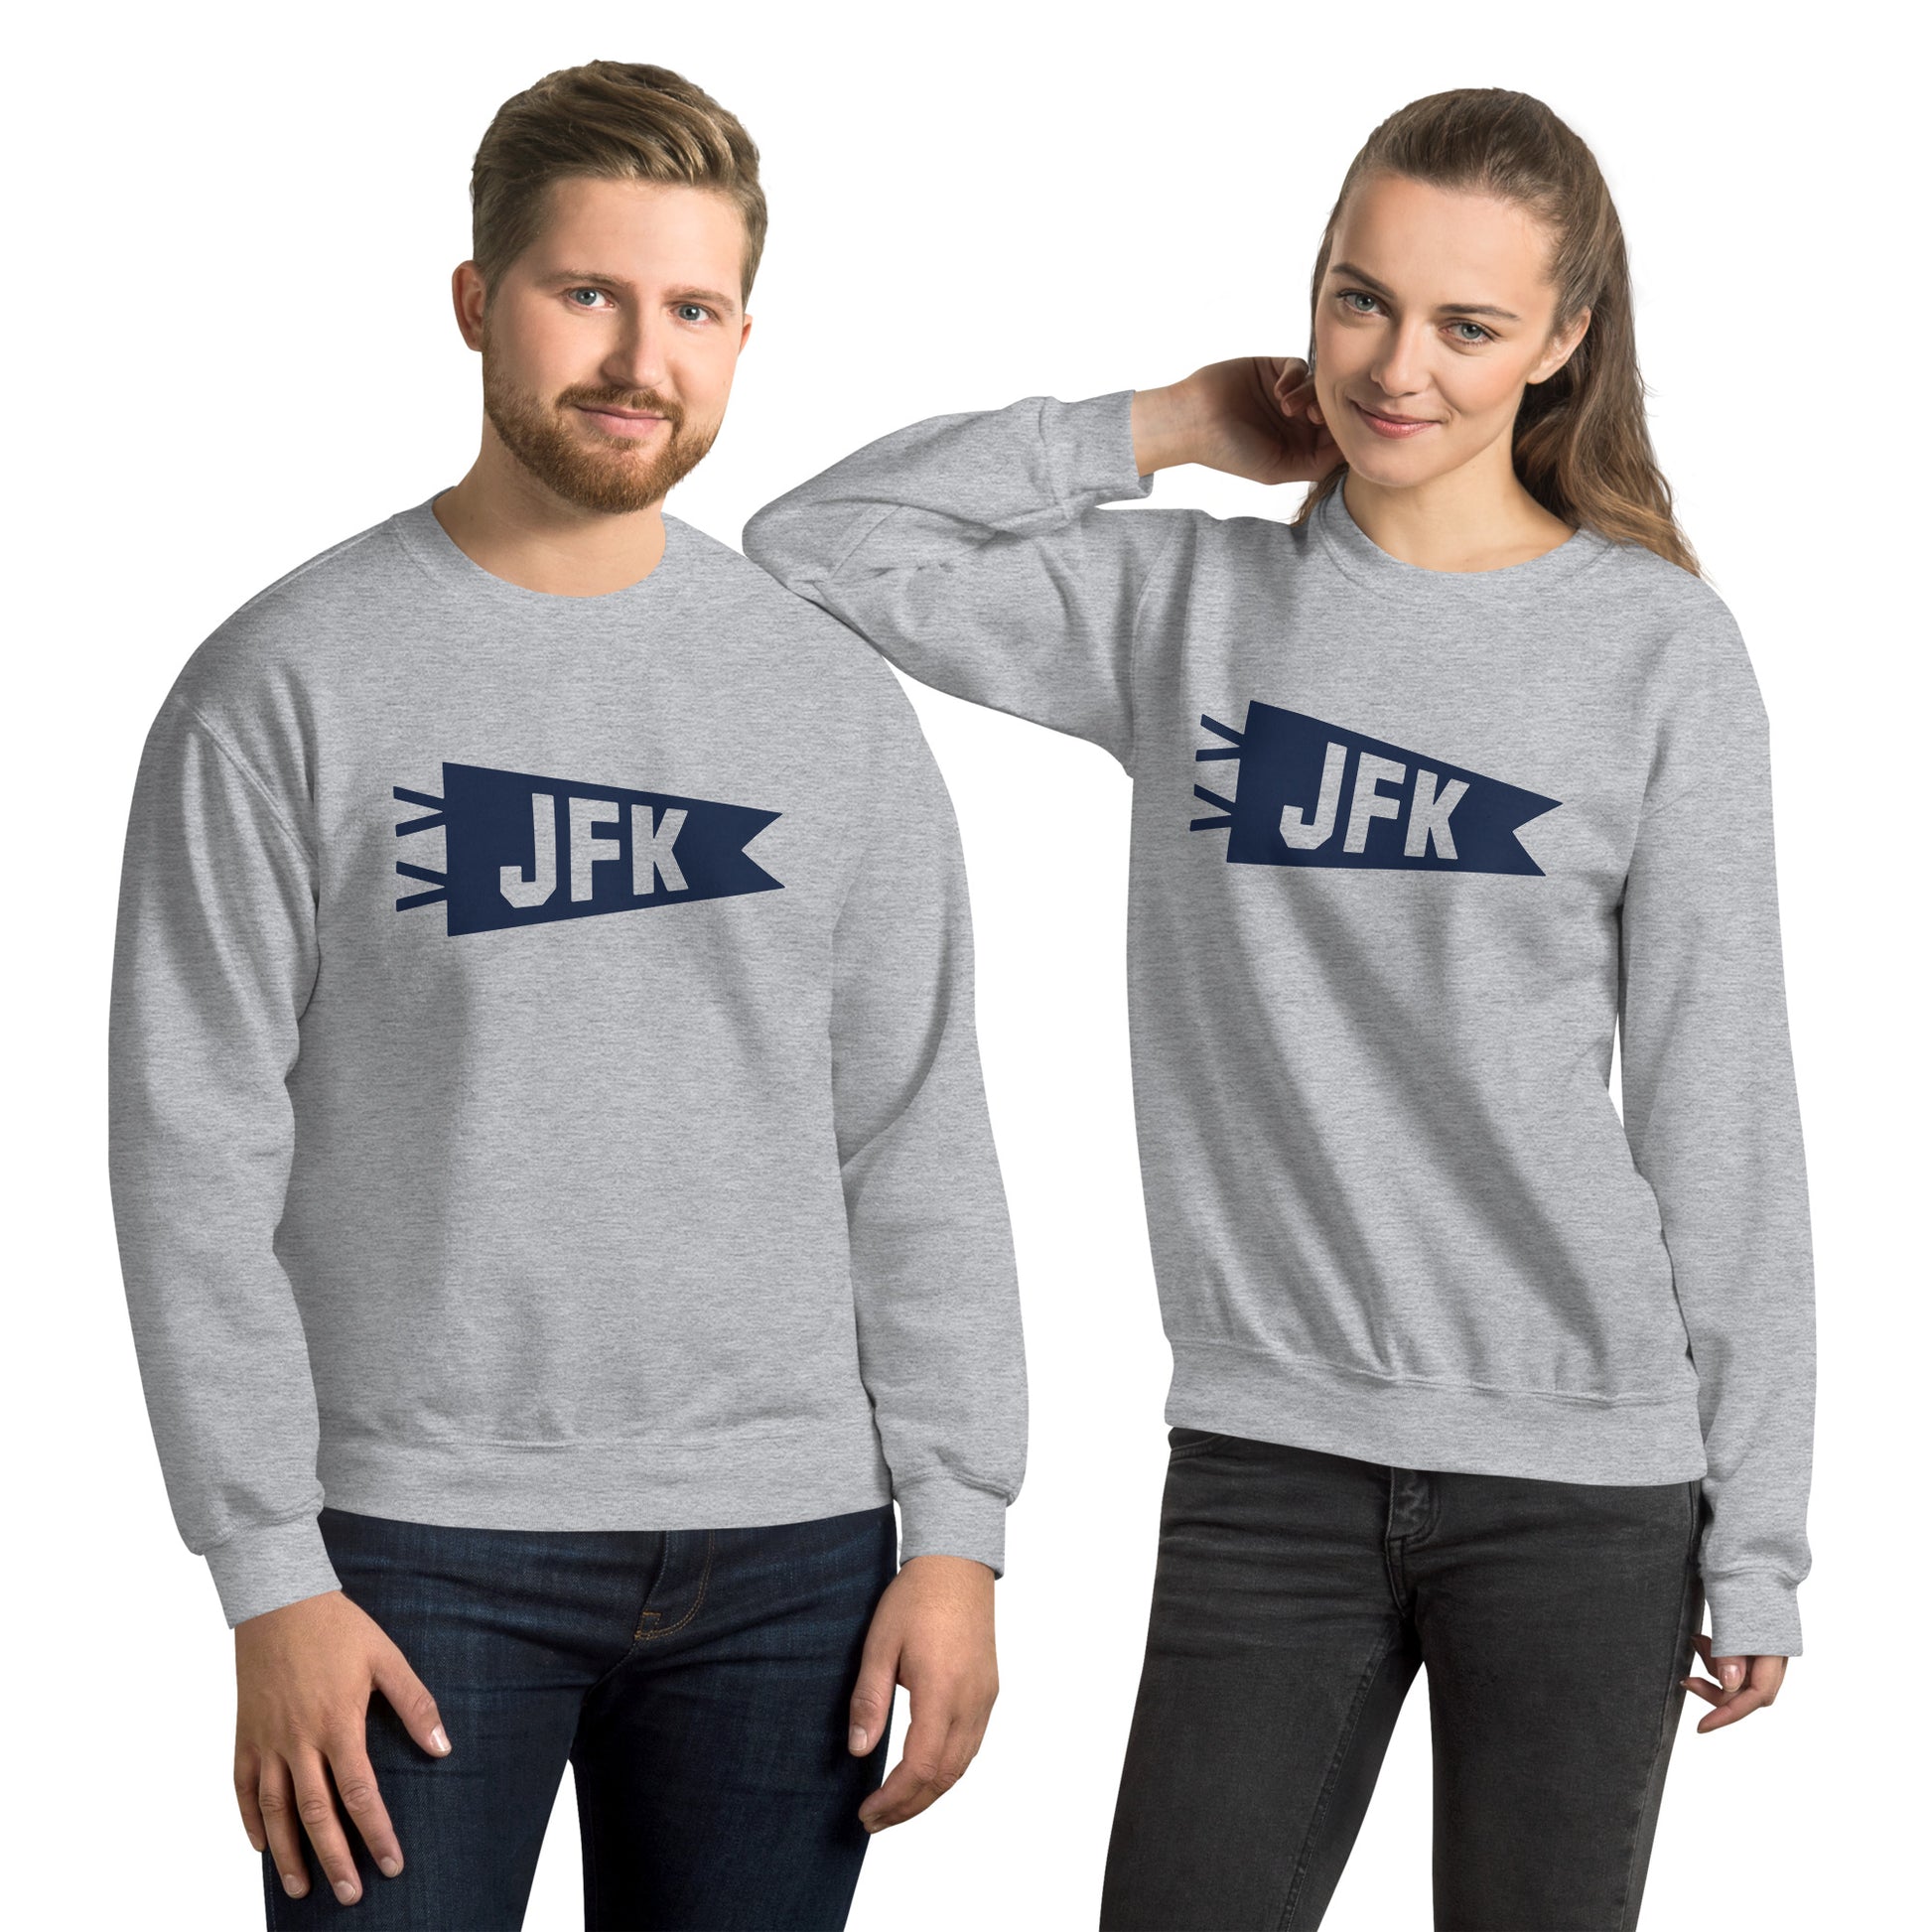 Airport Code Sweatshirt - Navy Blue Graphic • JFK New York City • YHM Designs - Image 09